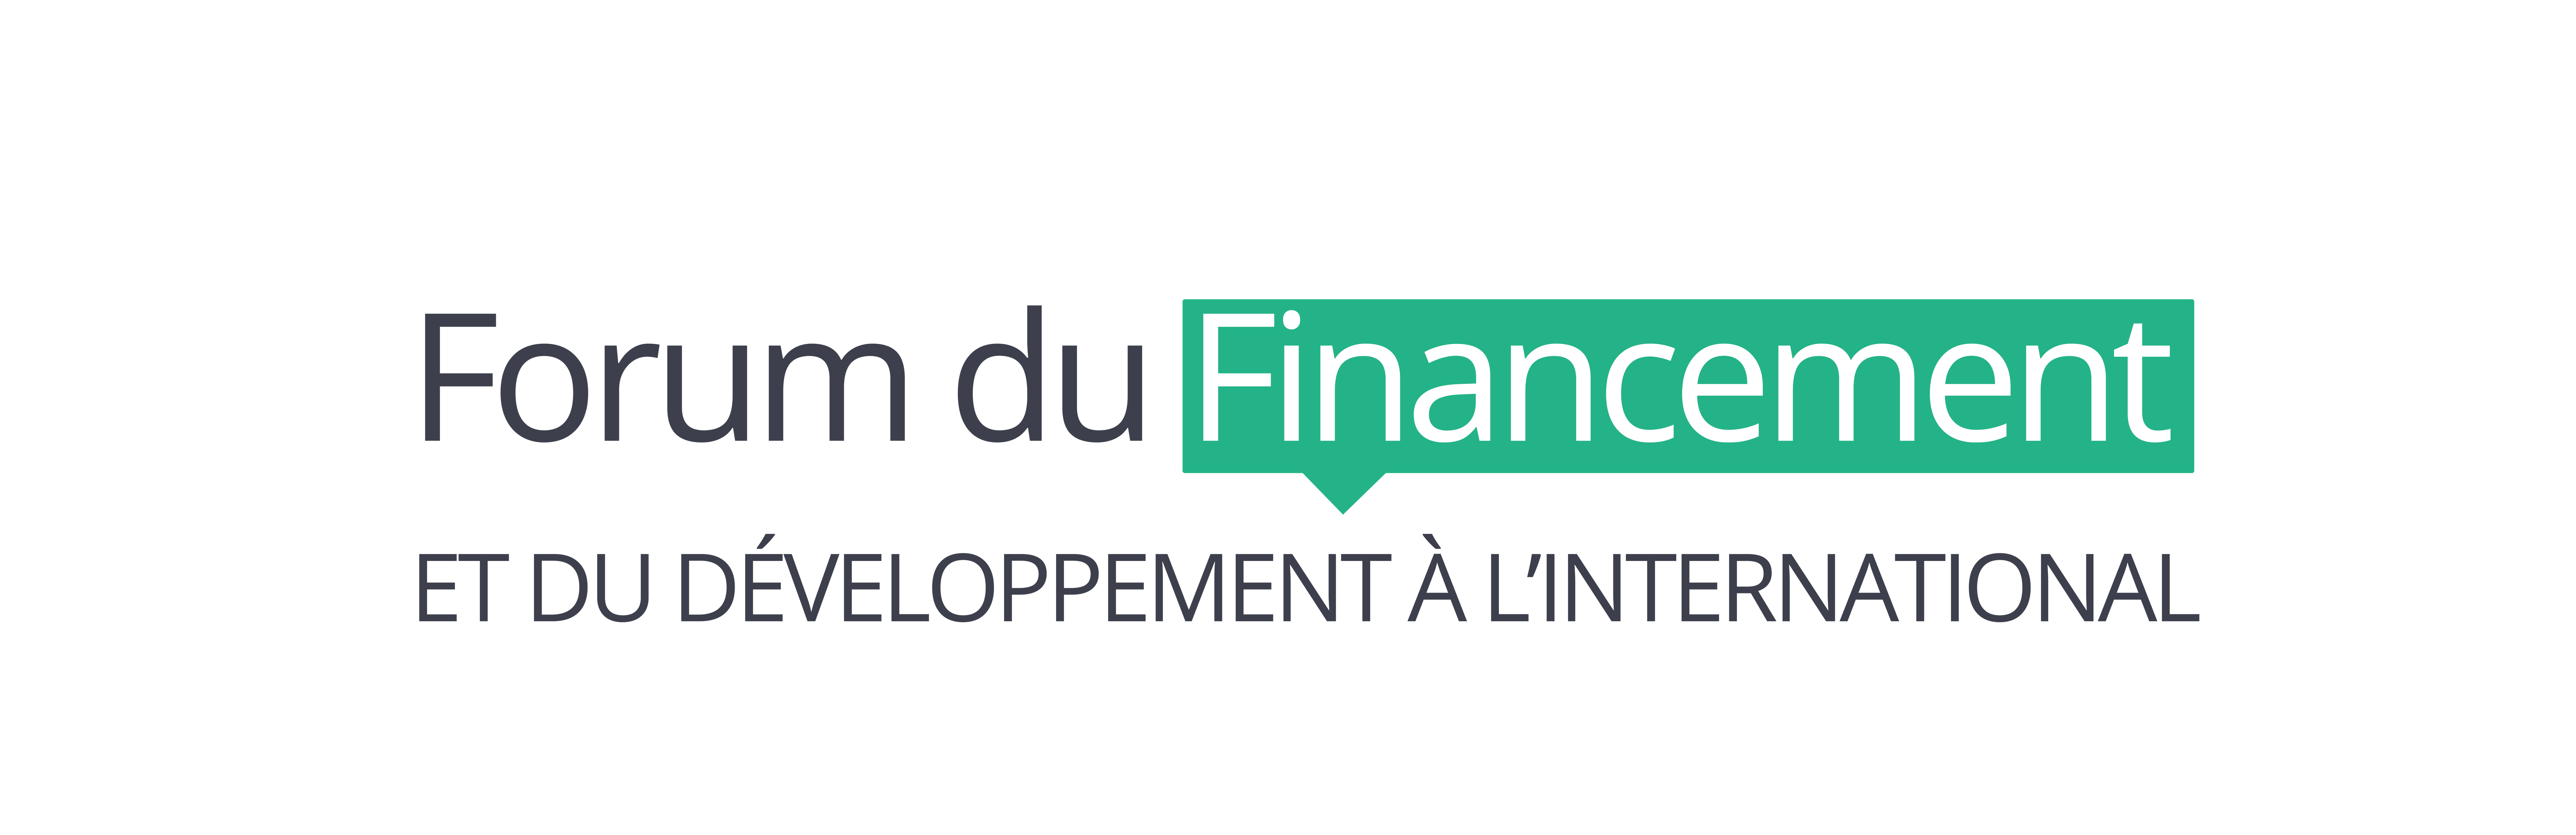 Forum du financement et du
développement à l'international